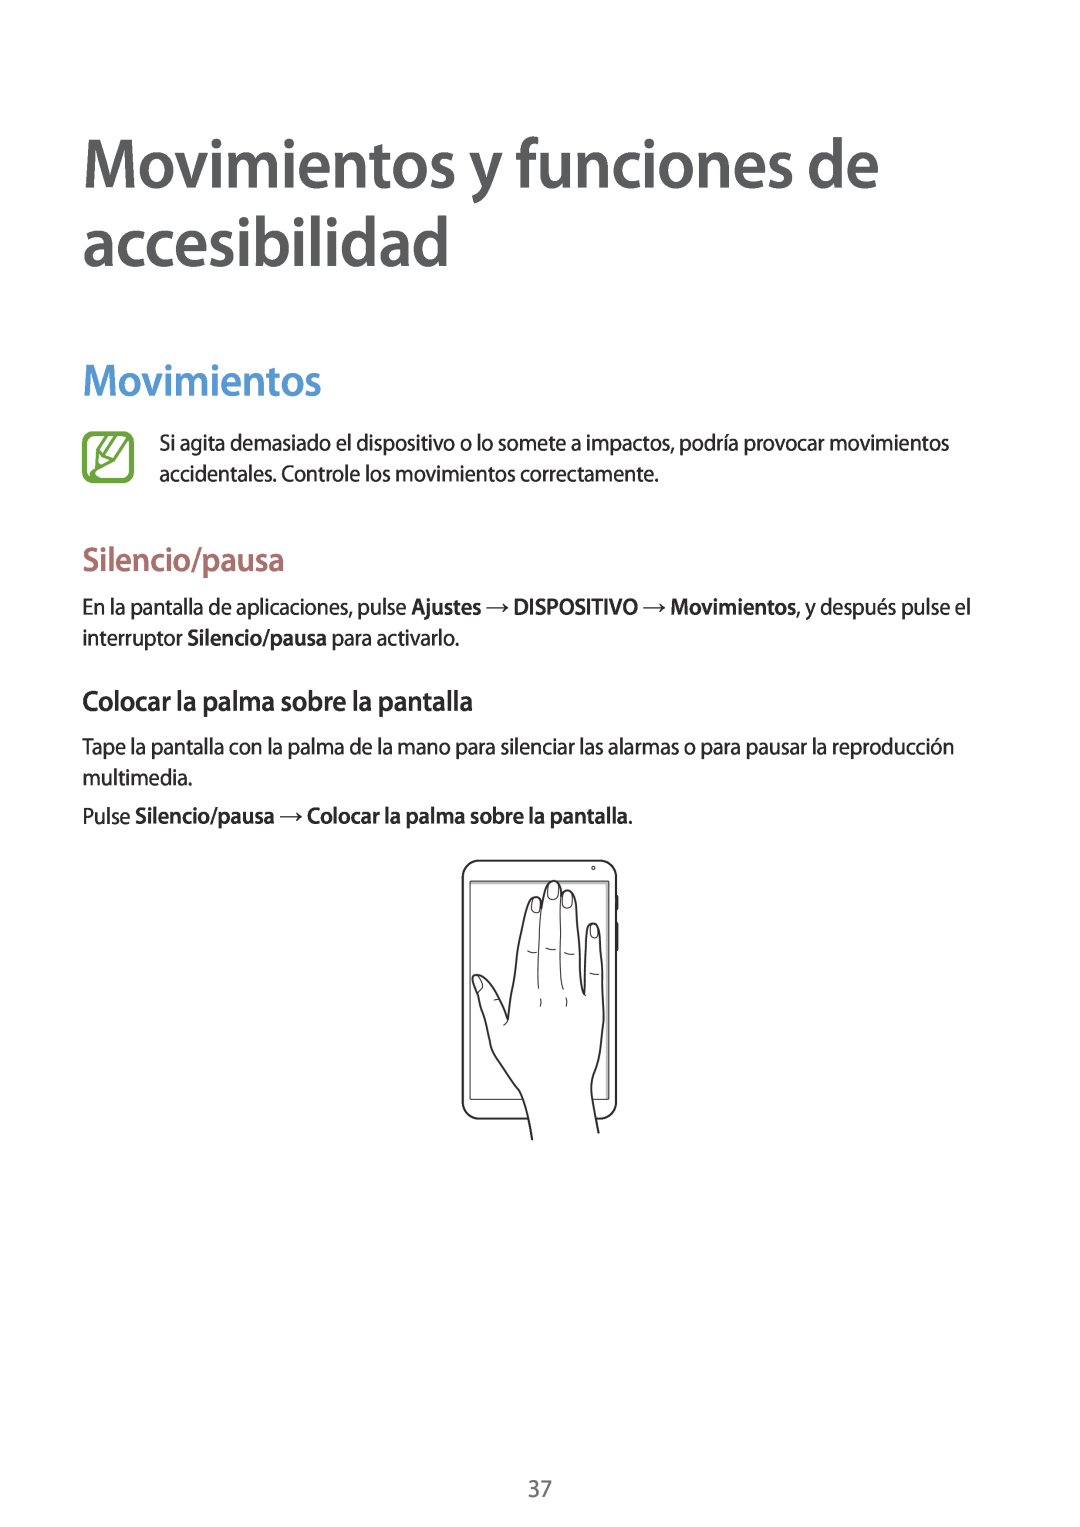 Samsung SM-T700NTSATGY manual Movimientos y funciones de accesibilidad, Silencio/pausa, Colocar la palma sobre la pantalla 